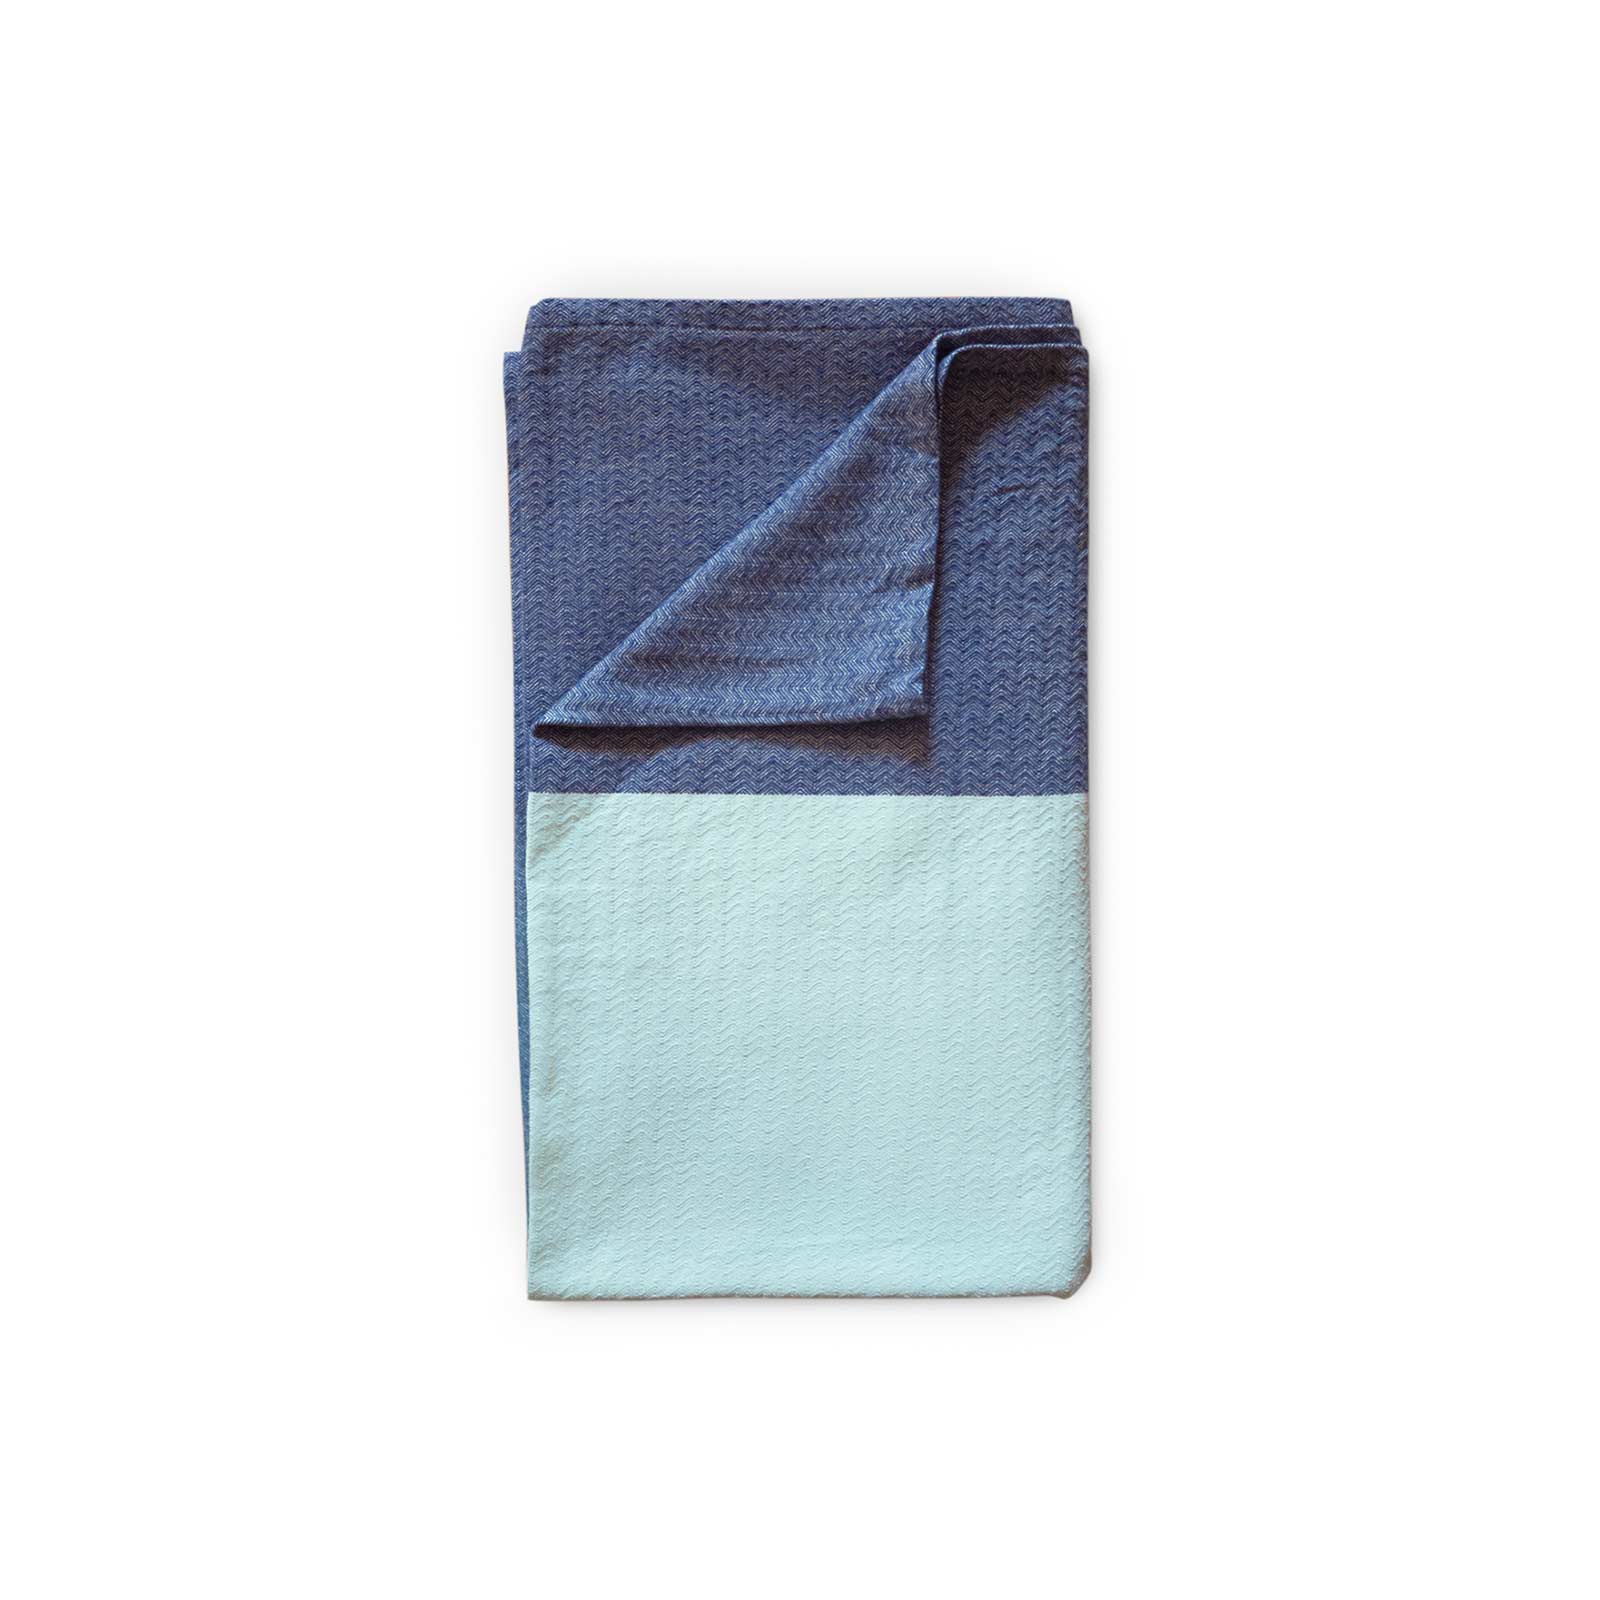 G-Tree – Couverture douce au toucher avec étiquette Taggie – Couverture  confortable – Cadeau idéal (couverture Taggie motif voilier bleu)